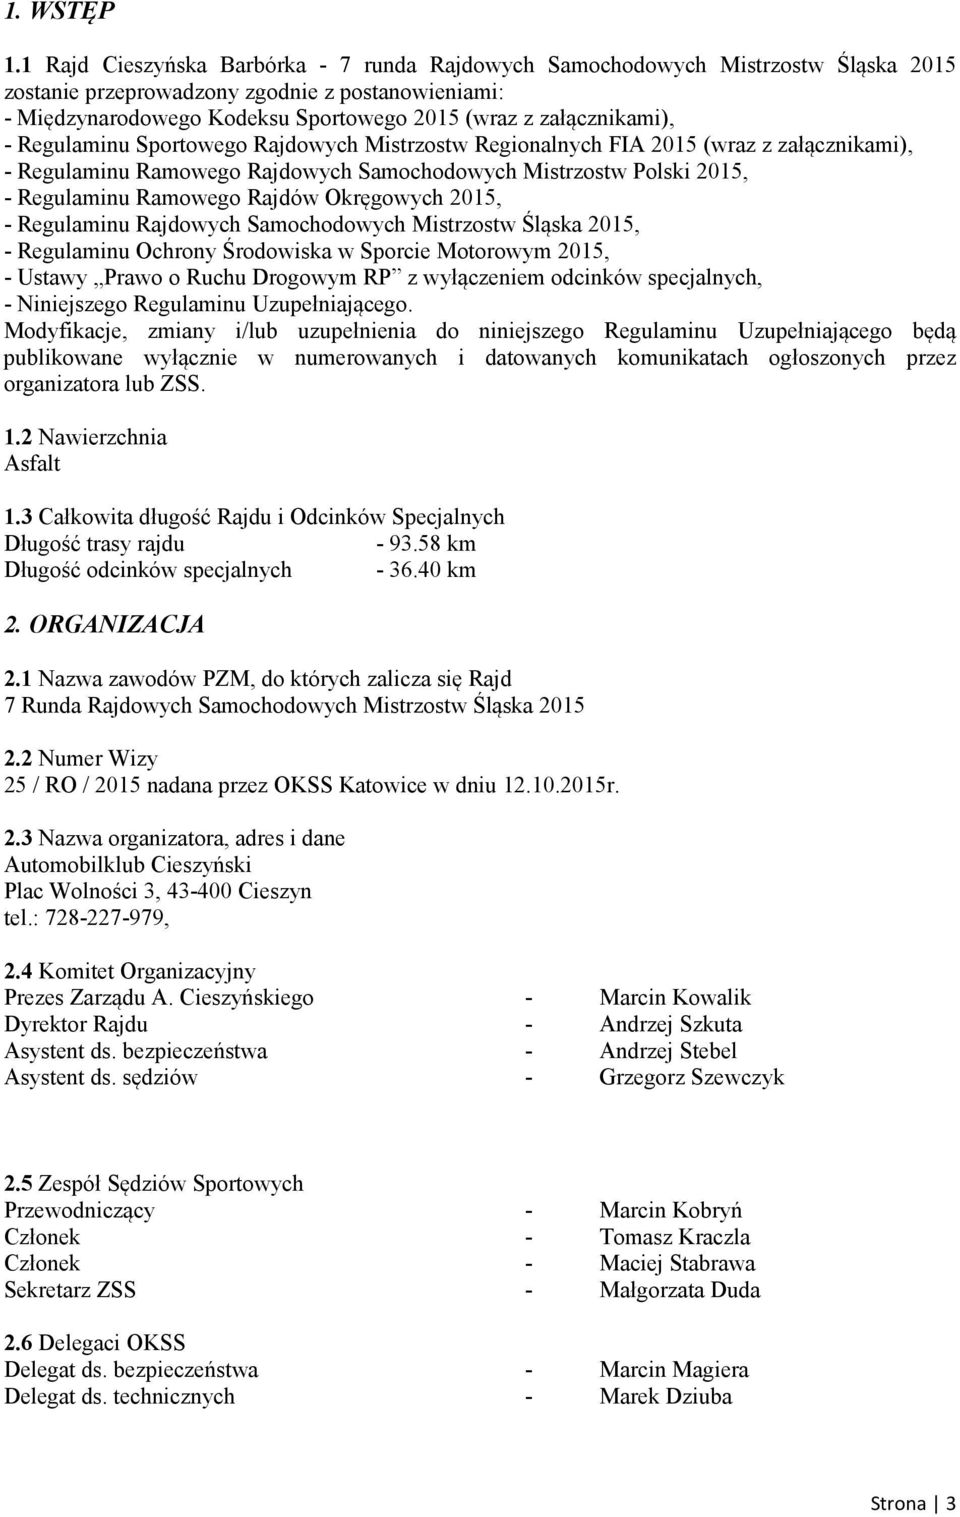 załącznikami), - Regulaminu Sportowego Rajdowych Mistrzostw Regionalnych FIA 2015 (wraz z załącznikami), - Regulaminu Ramowego Rajdowych Samochodowych Mistrzostw Polski 2015, - Regulaminu Ramowego